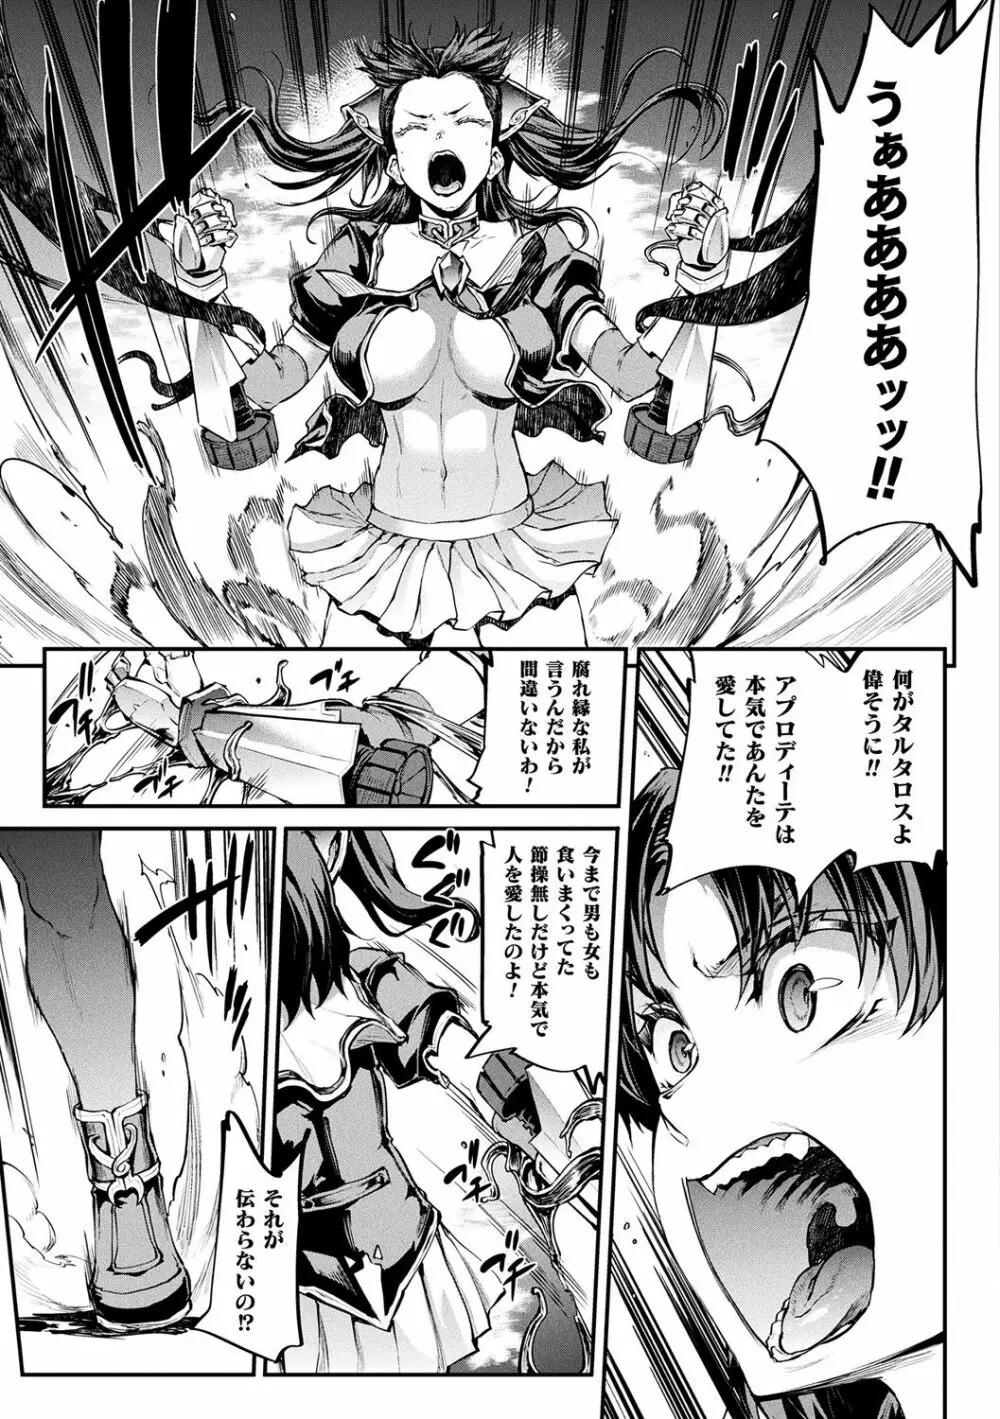 [エレクトさわる] 雷光神姫アイギスマギアII -PANDRA saga 3rd ignition- + 電子書籍特典デジタルポスター [DL版] 189ページ